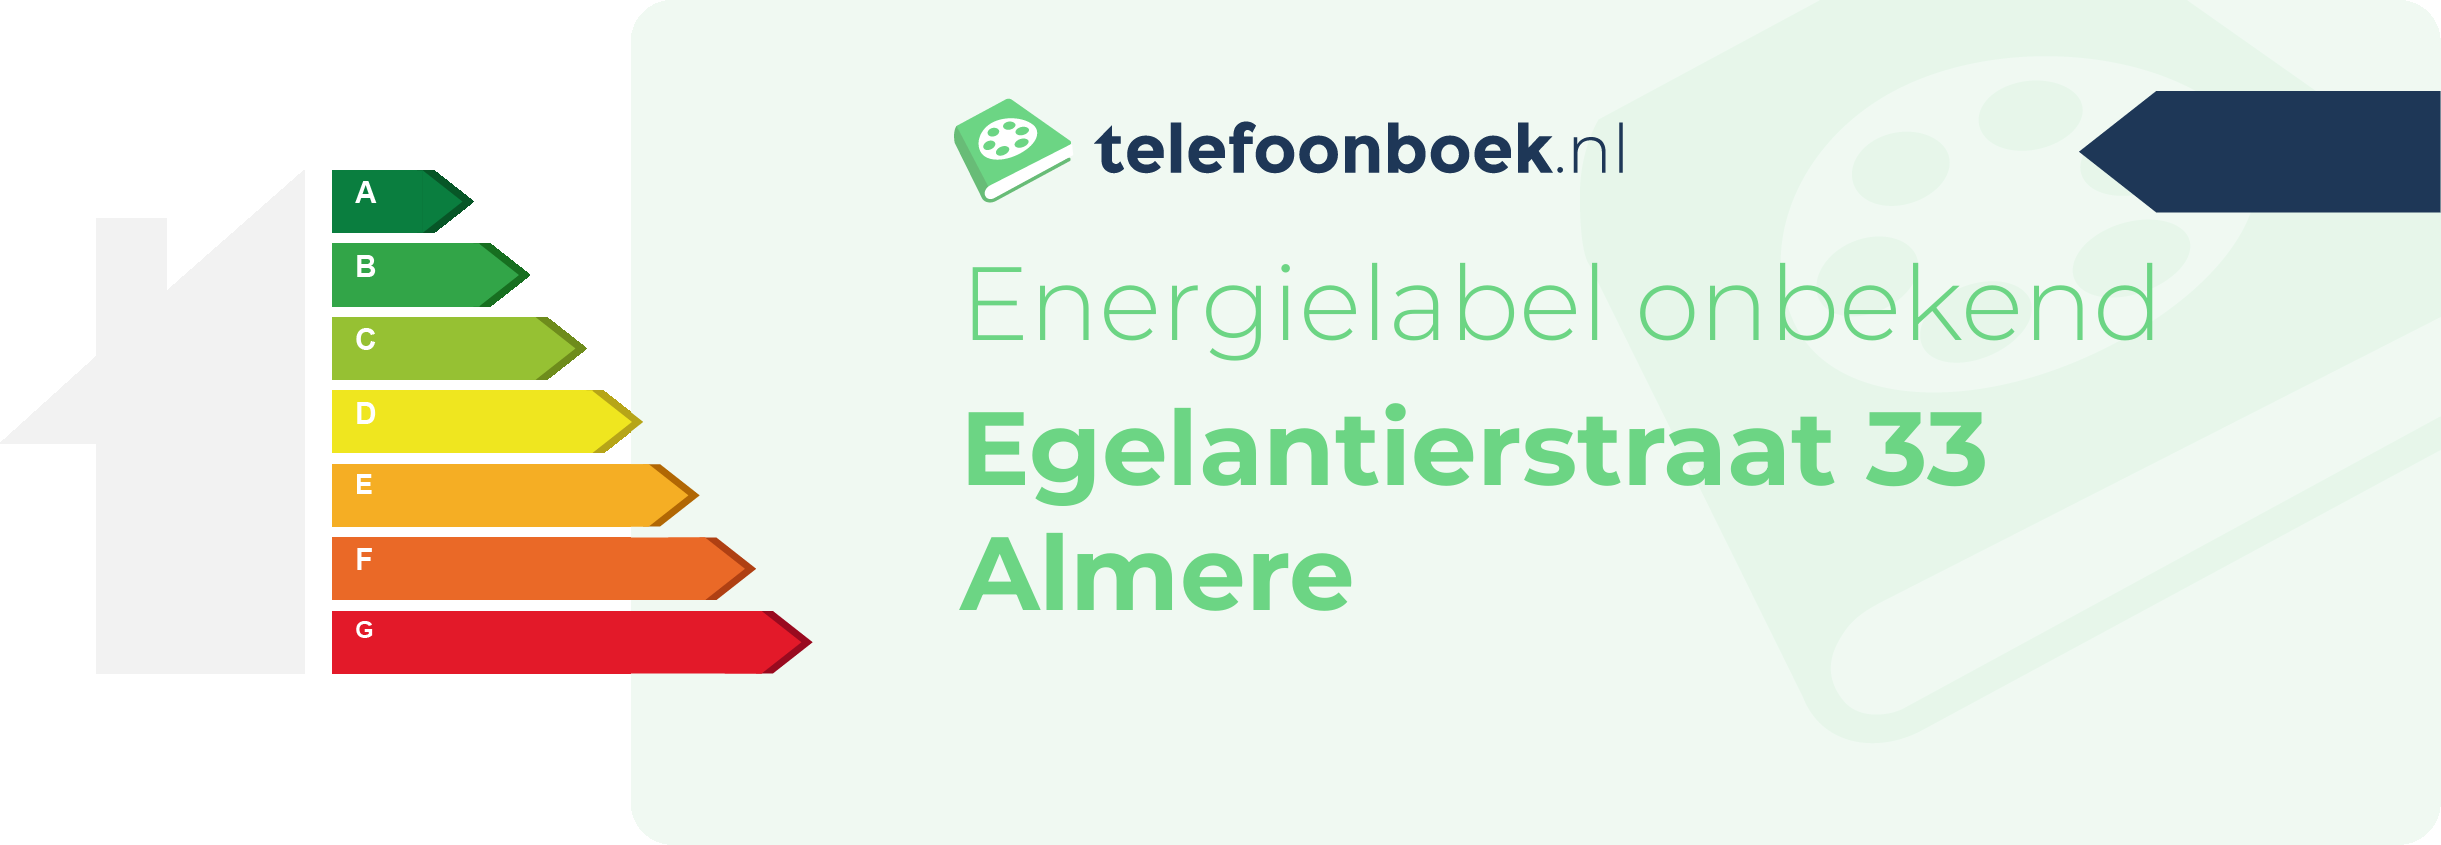 Energielabel Egelantierstraat 33 Almere